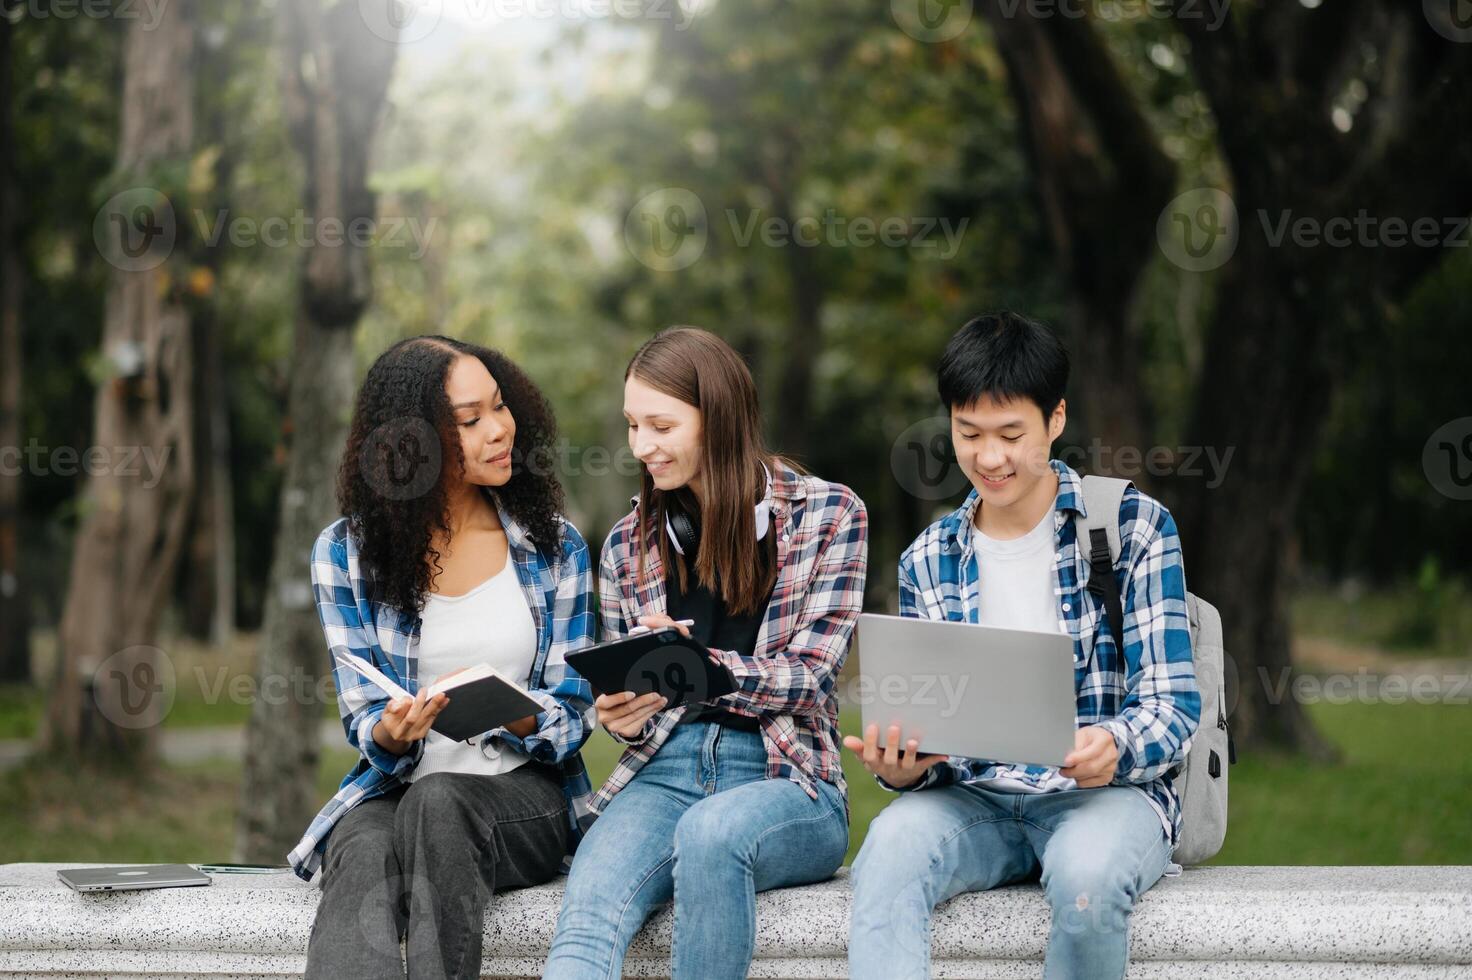 studenti siamo studiando il città universitaria parco. giovane persone siamo la spesa tempo insieme. lettura prenotare, Lavorando con computer portatile, tavoletta e comunicare mentre foto